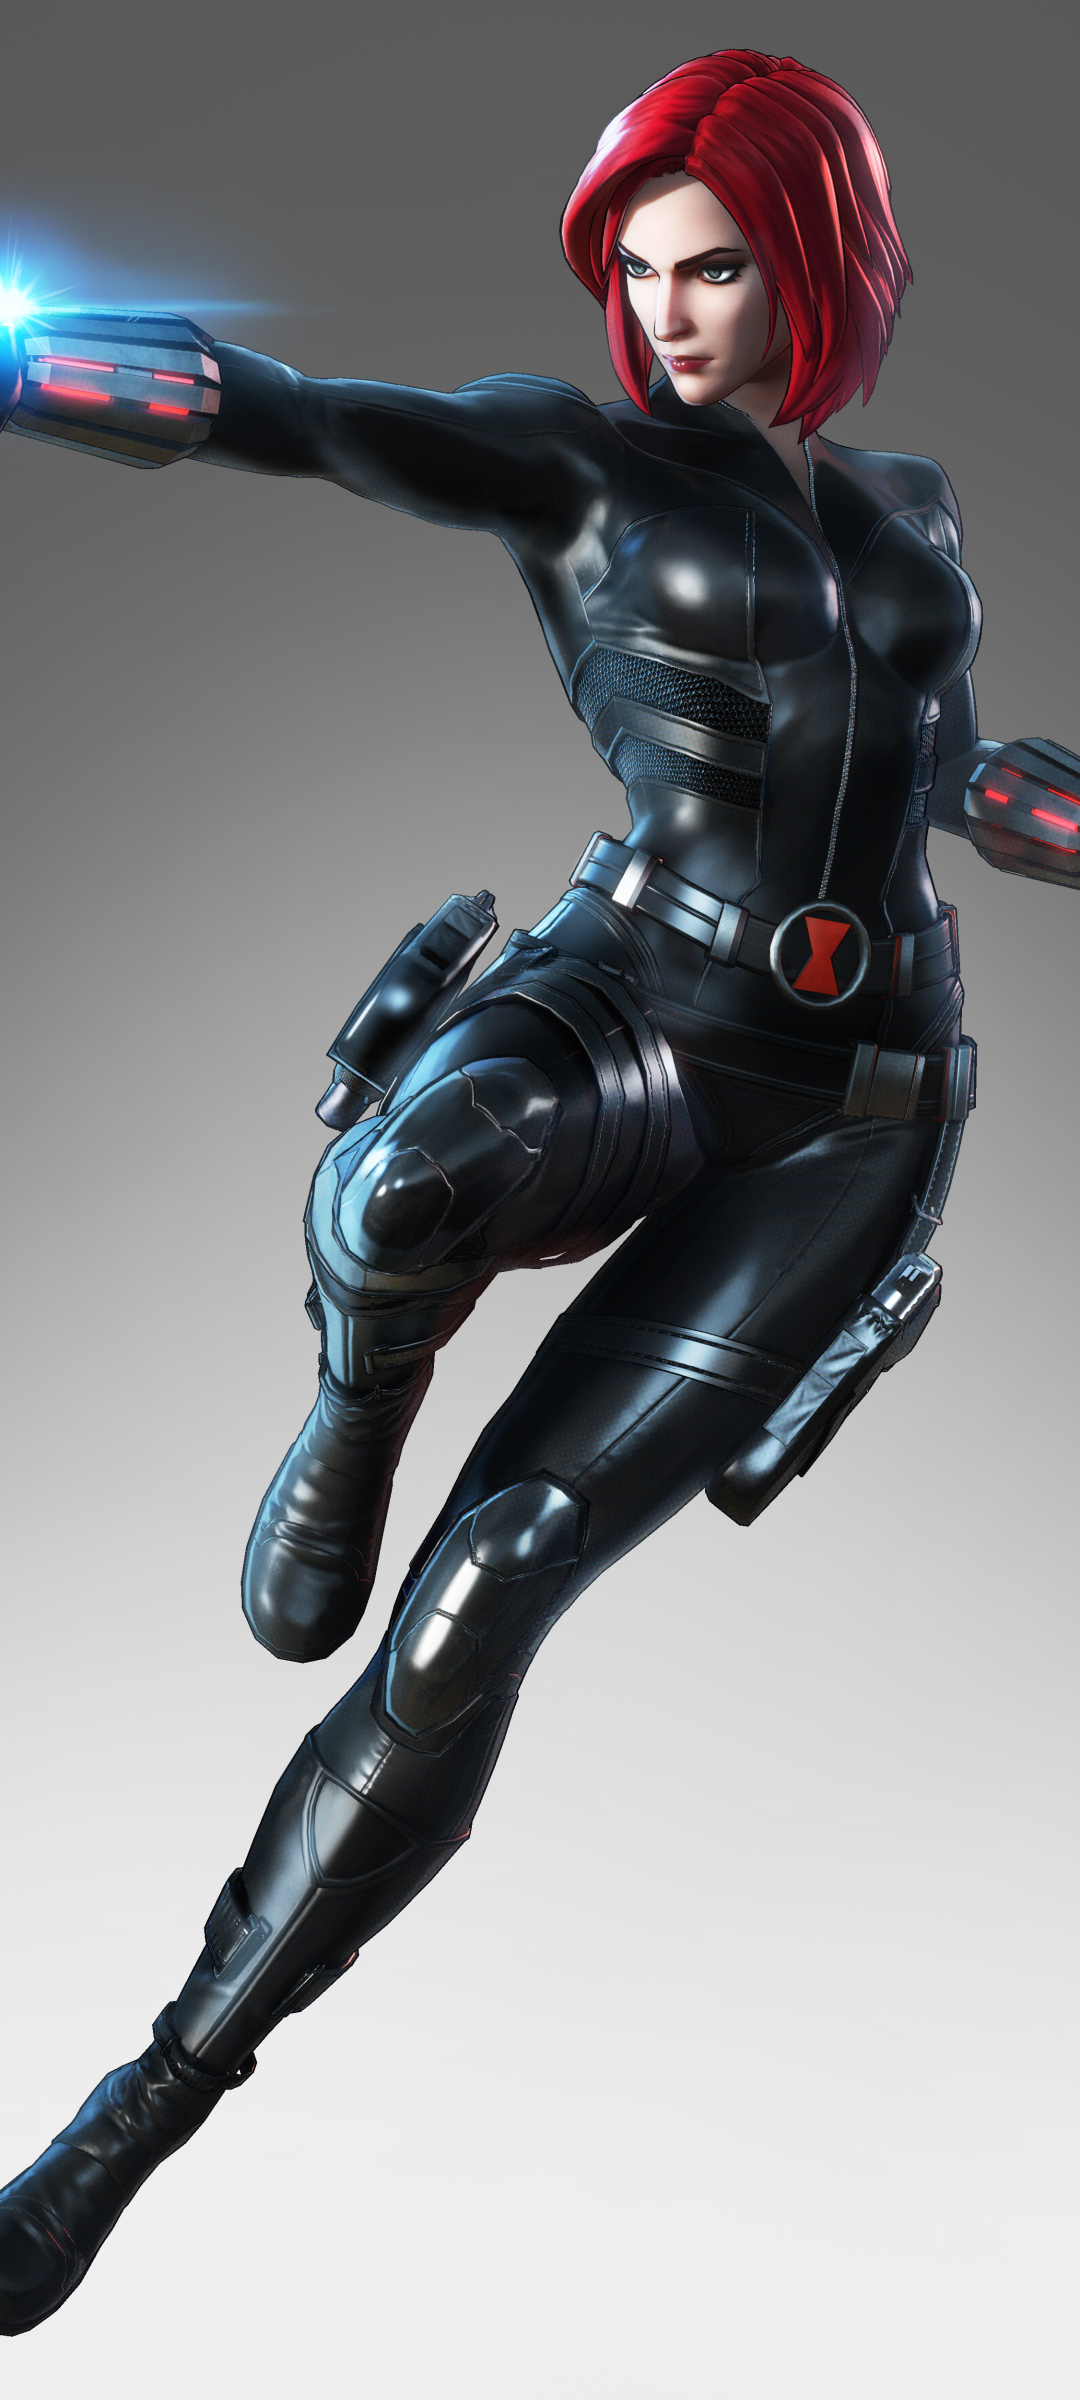 Desktop Backgrounds Marvel Ultimate Alliance 3: The Black Order 